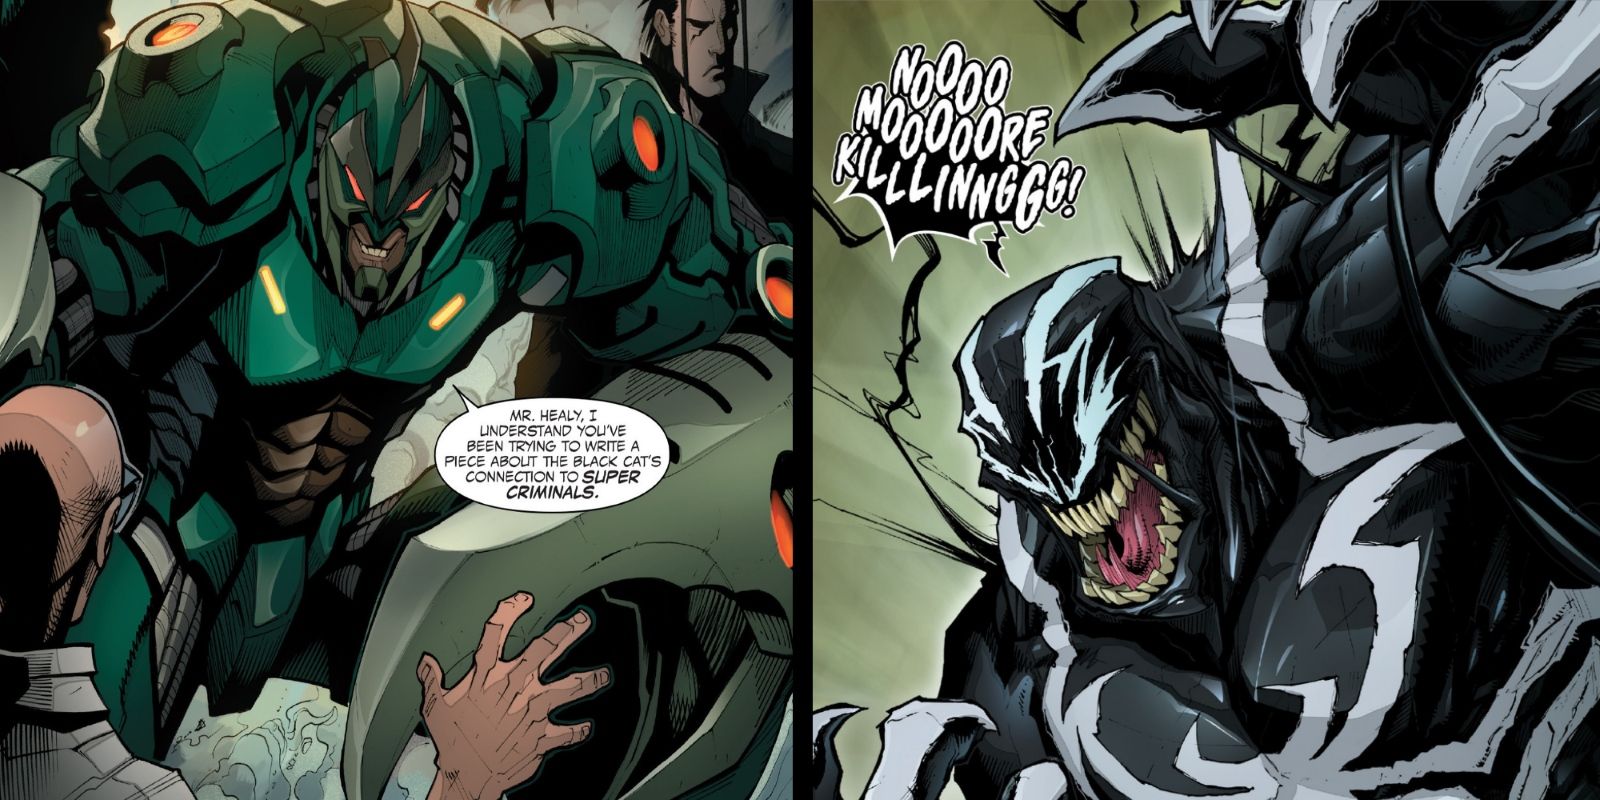 Marvel’s Venom Battles Its Former Host